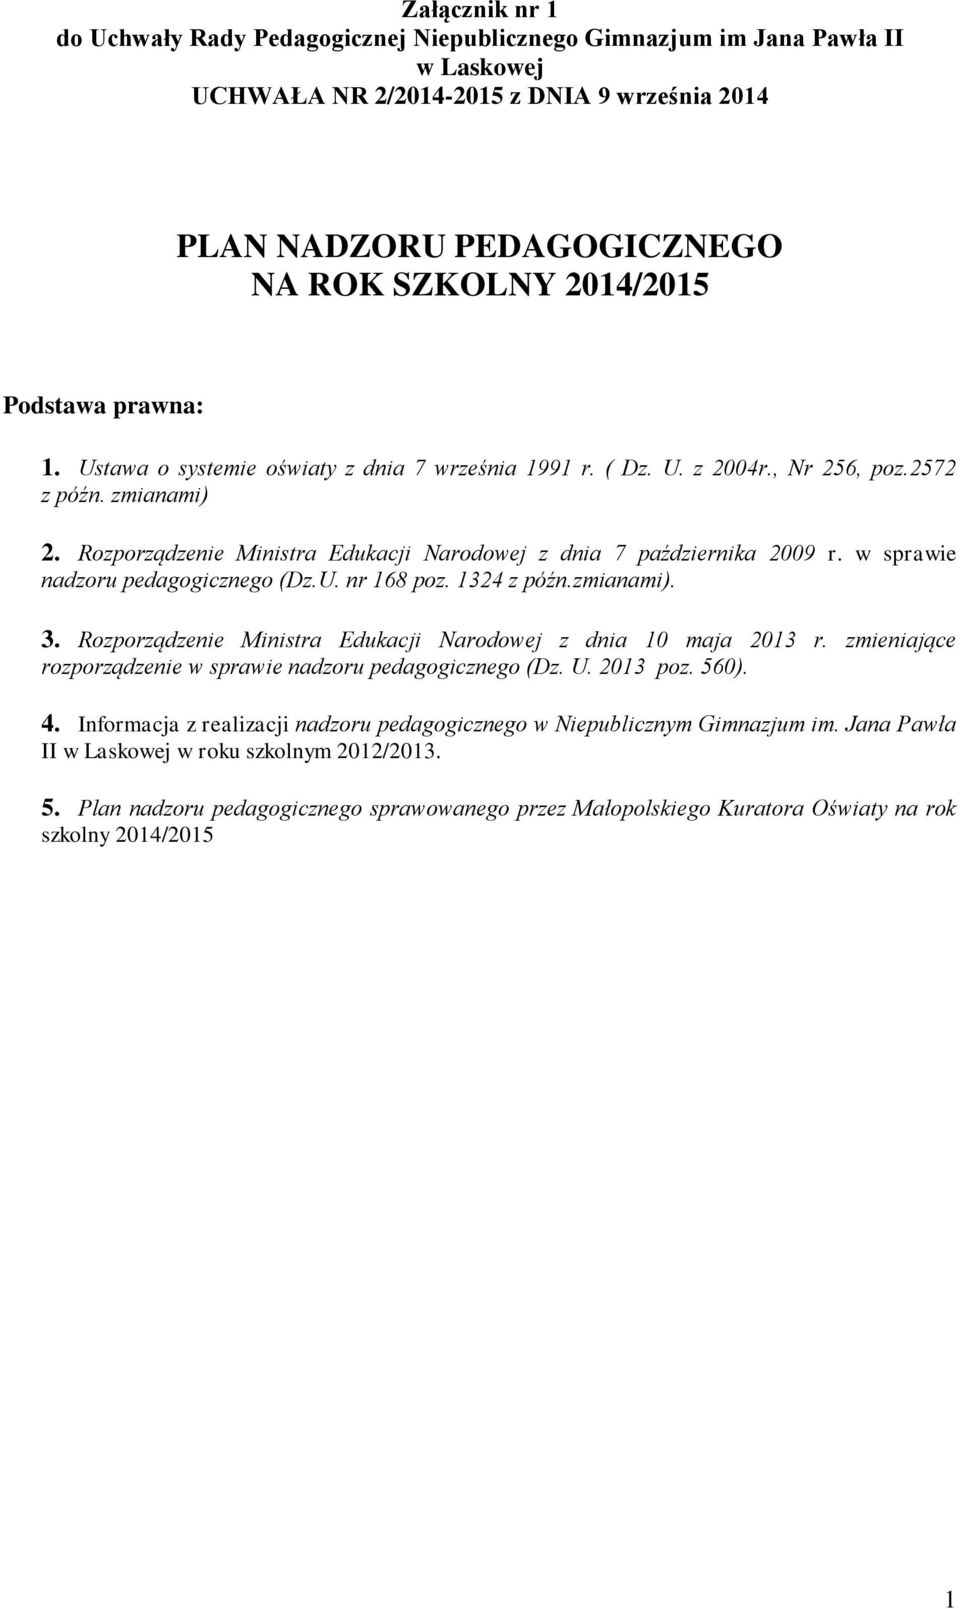 Rozporządzenie Ministra Edukacji Narodowej z dnia 10 maja 2013 r. zmieniające rozporządzenie w sprawie nadzoru pedagogicznego (Dz. U. 2013 poz. 560). 4.